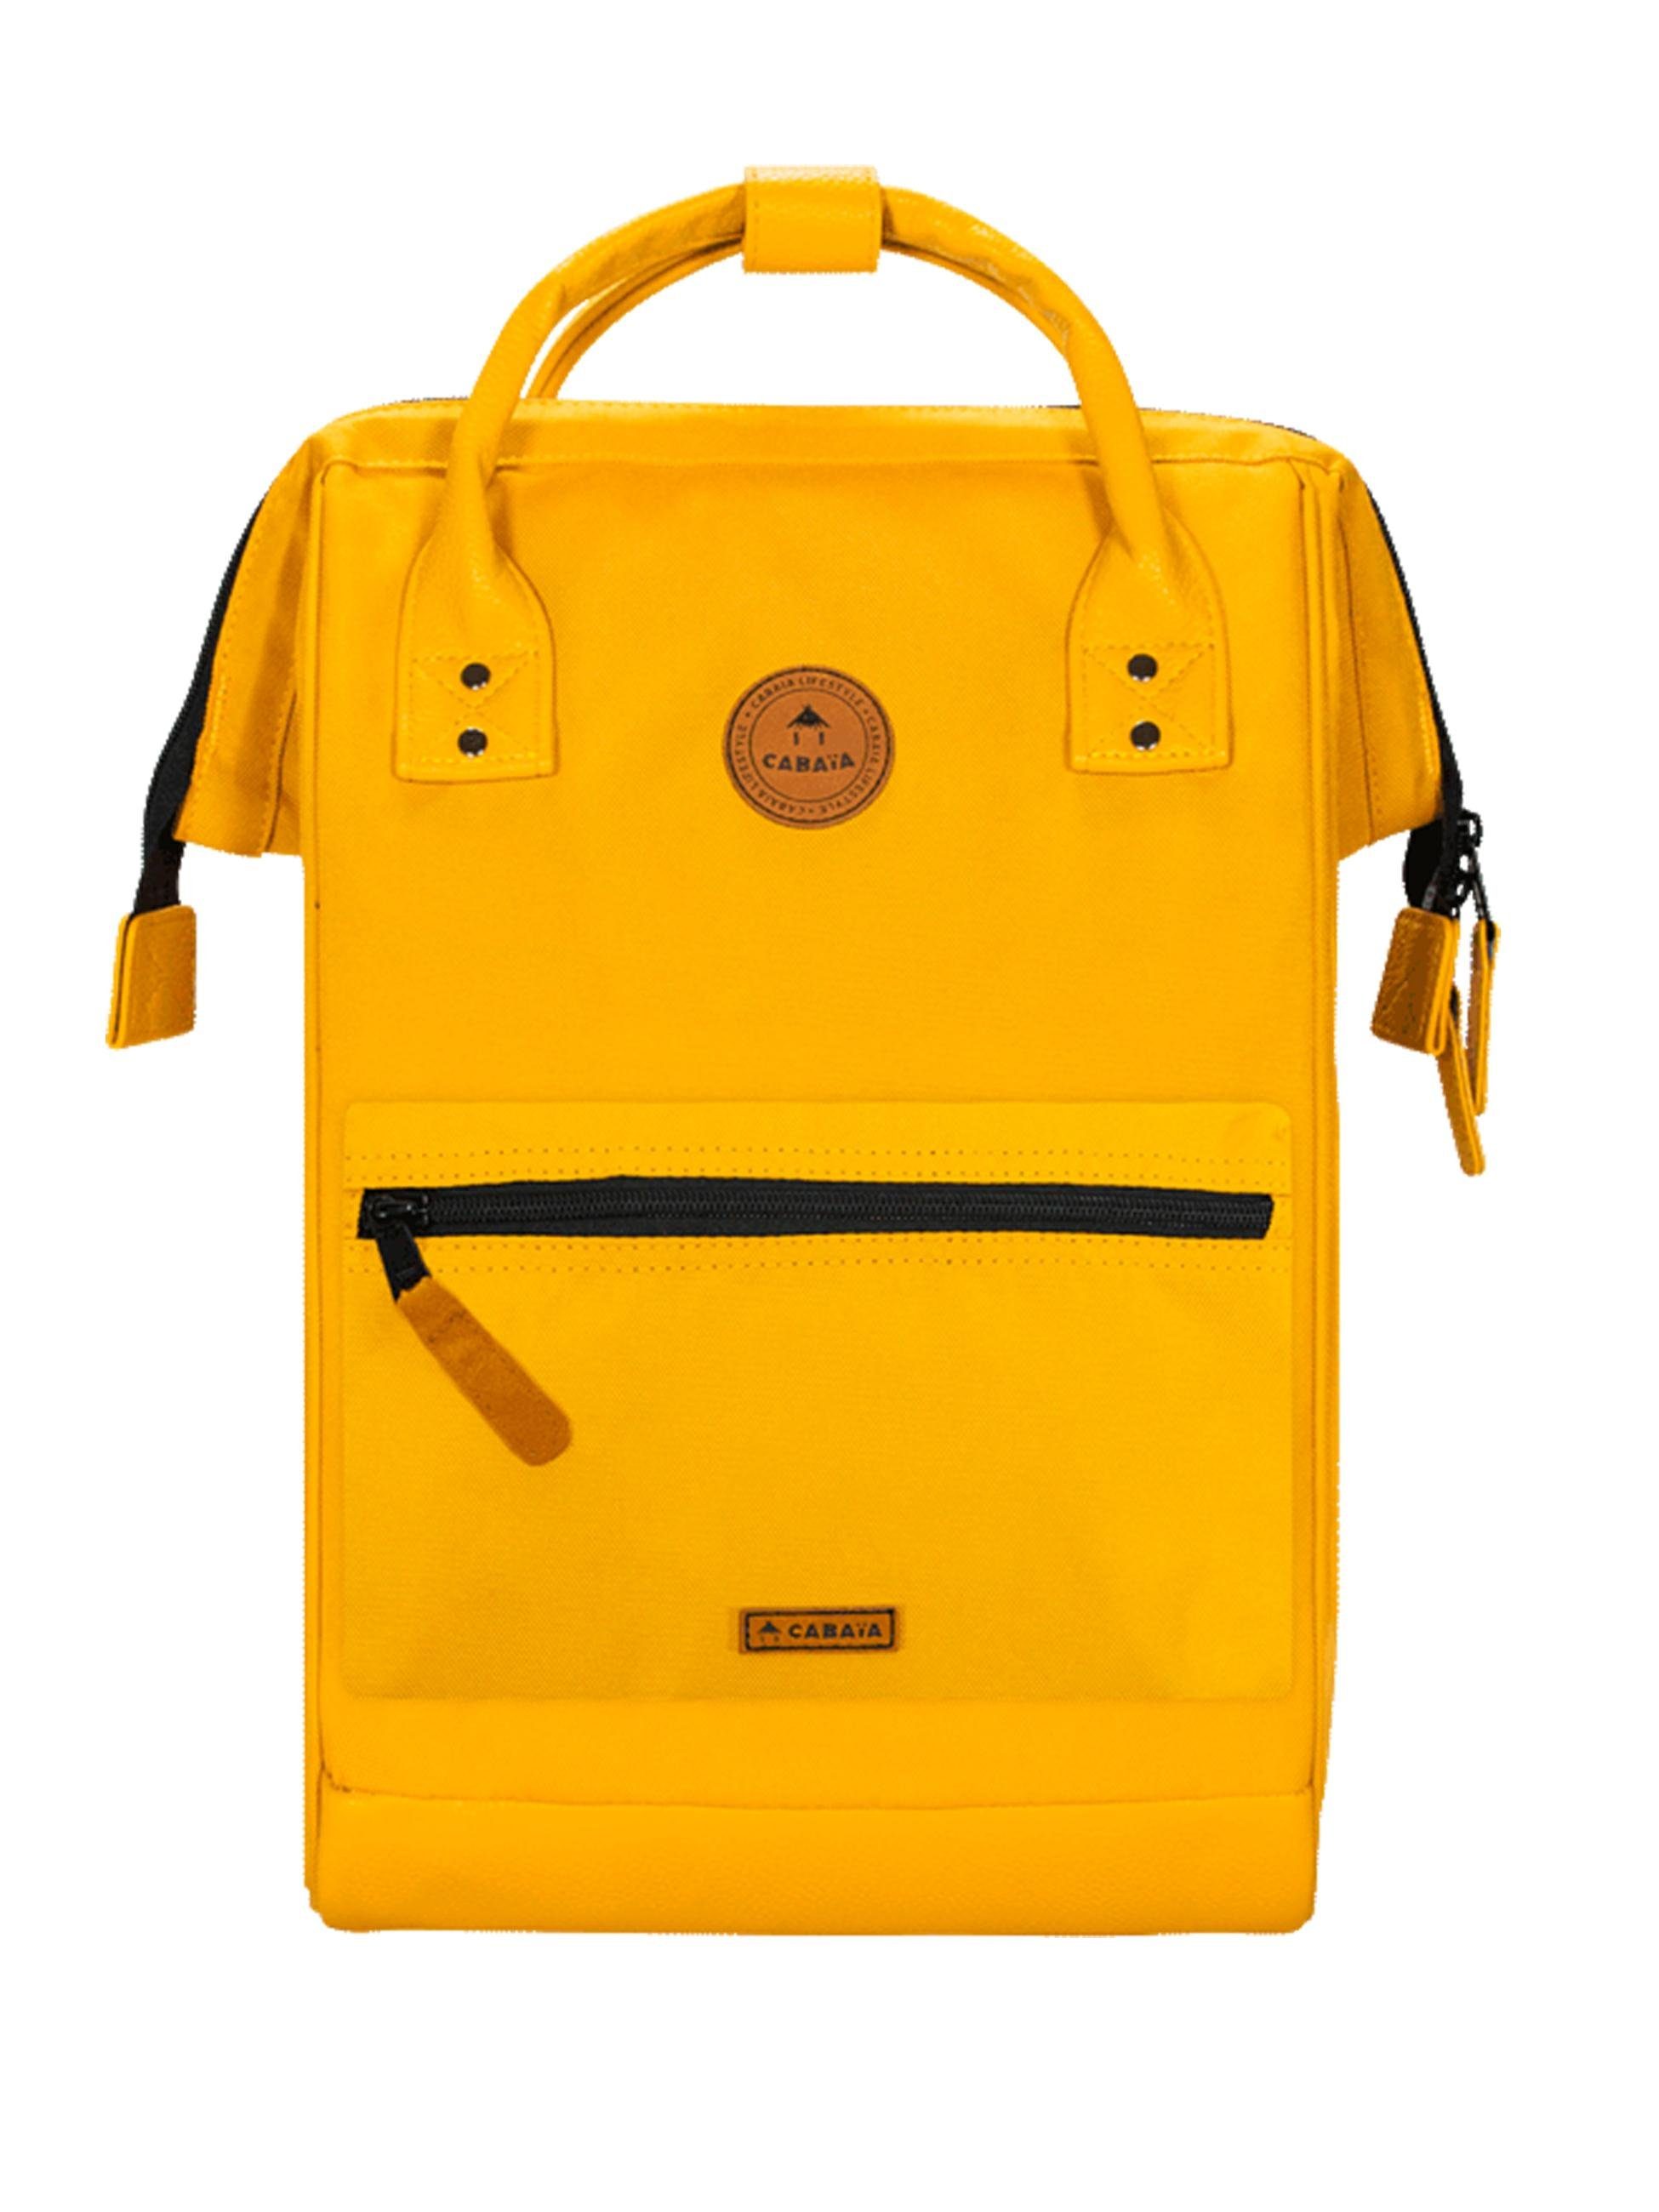 CABAIA Tagesrucksack Adventurer M Recycled, Cityrucksack mit austauschbaren Vordertaschen gelb